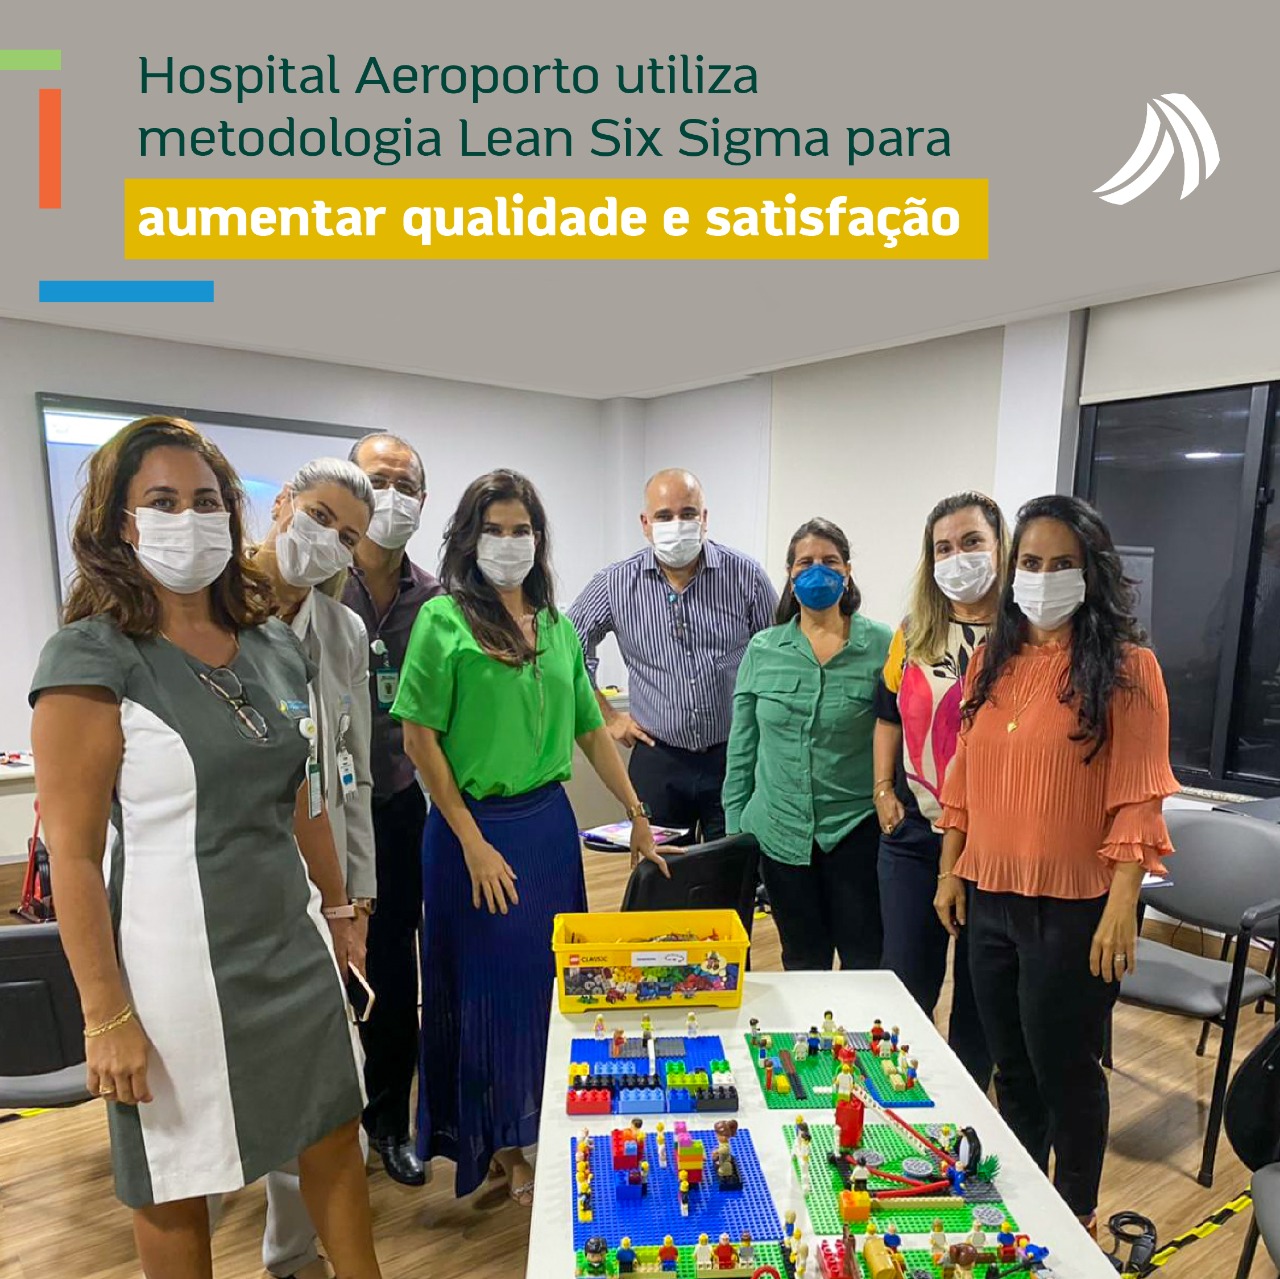 Hospital Aeroporto utiliza metodologia Lean Six Sigma para aumentar qualidade e satisfação